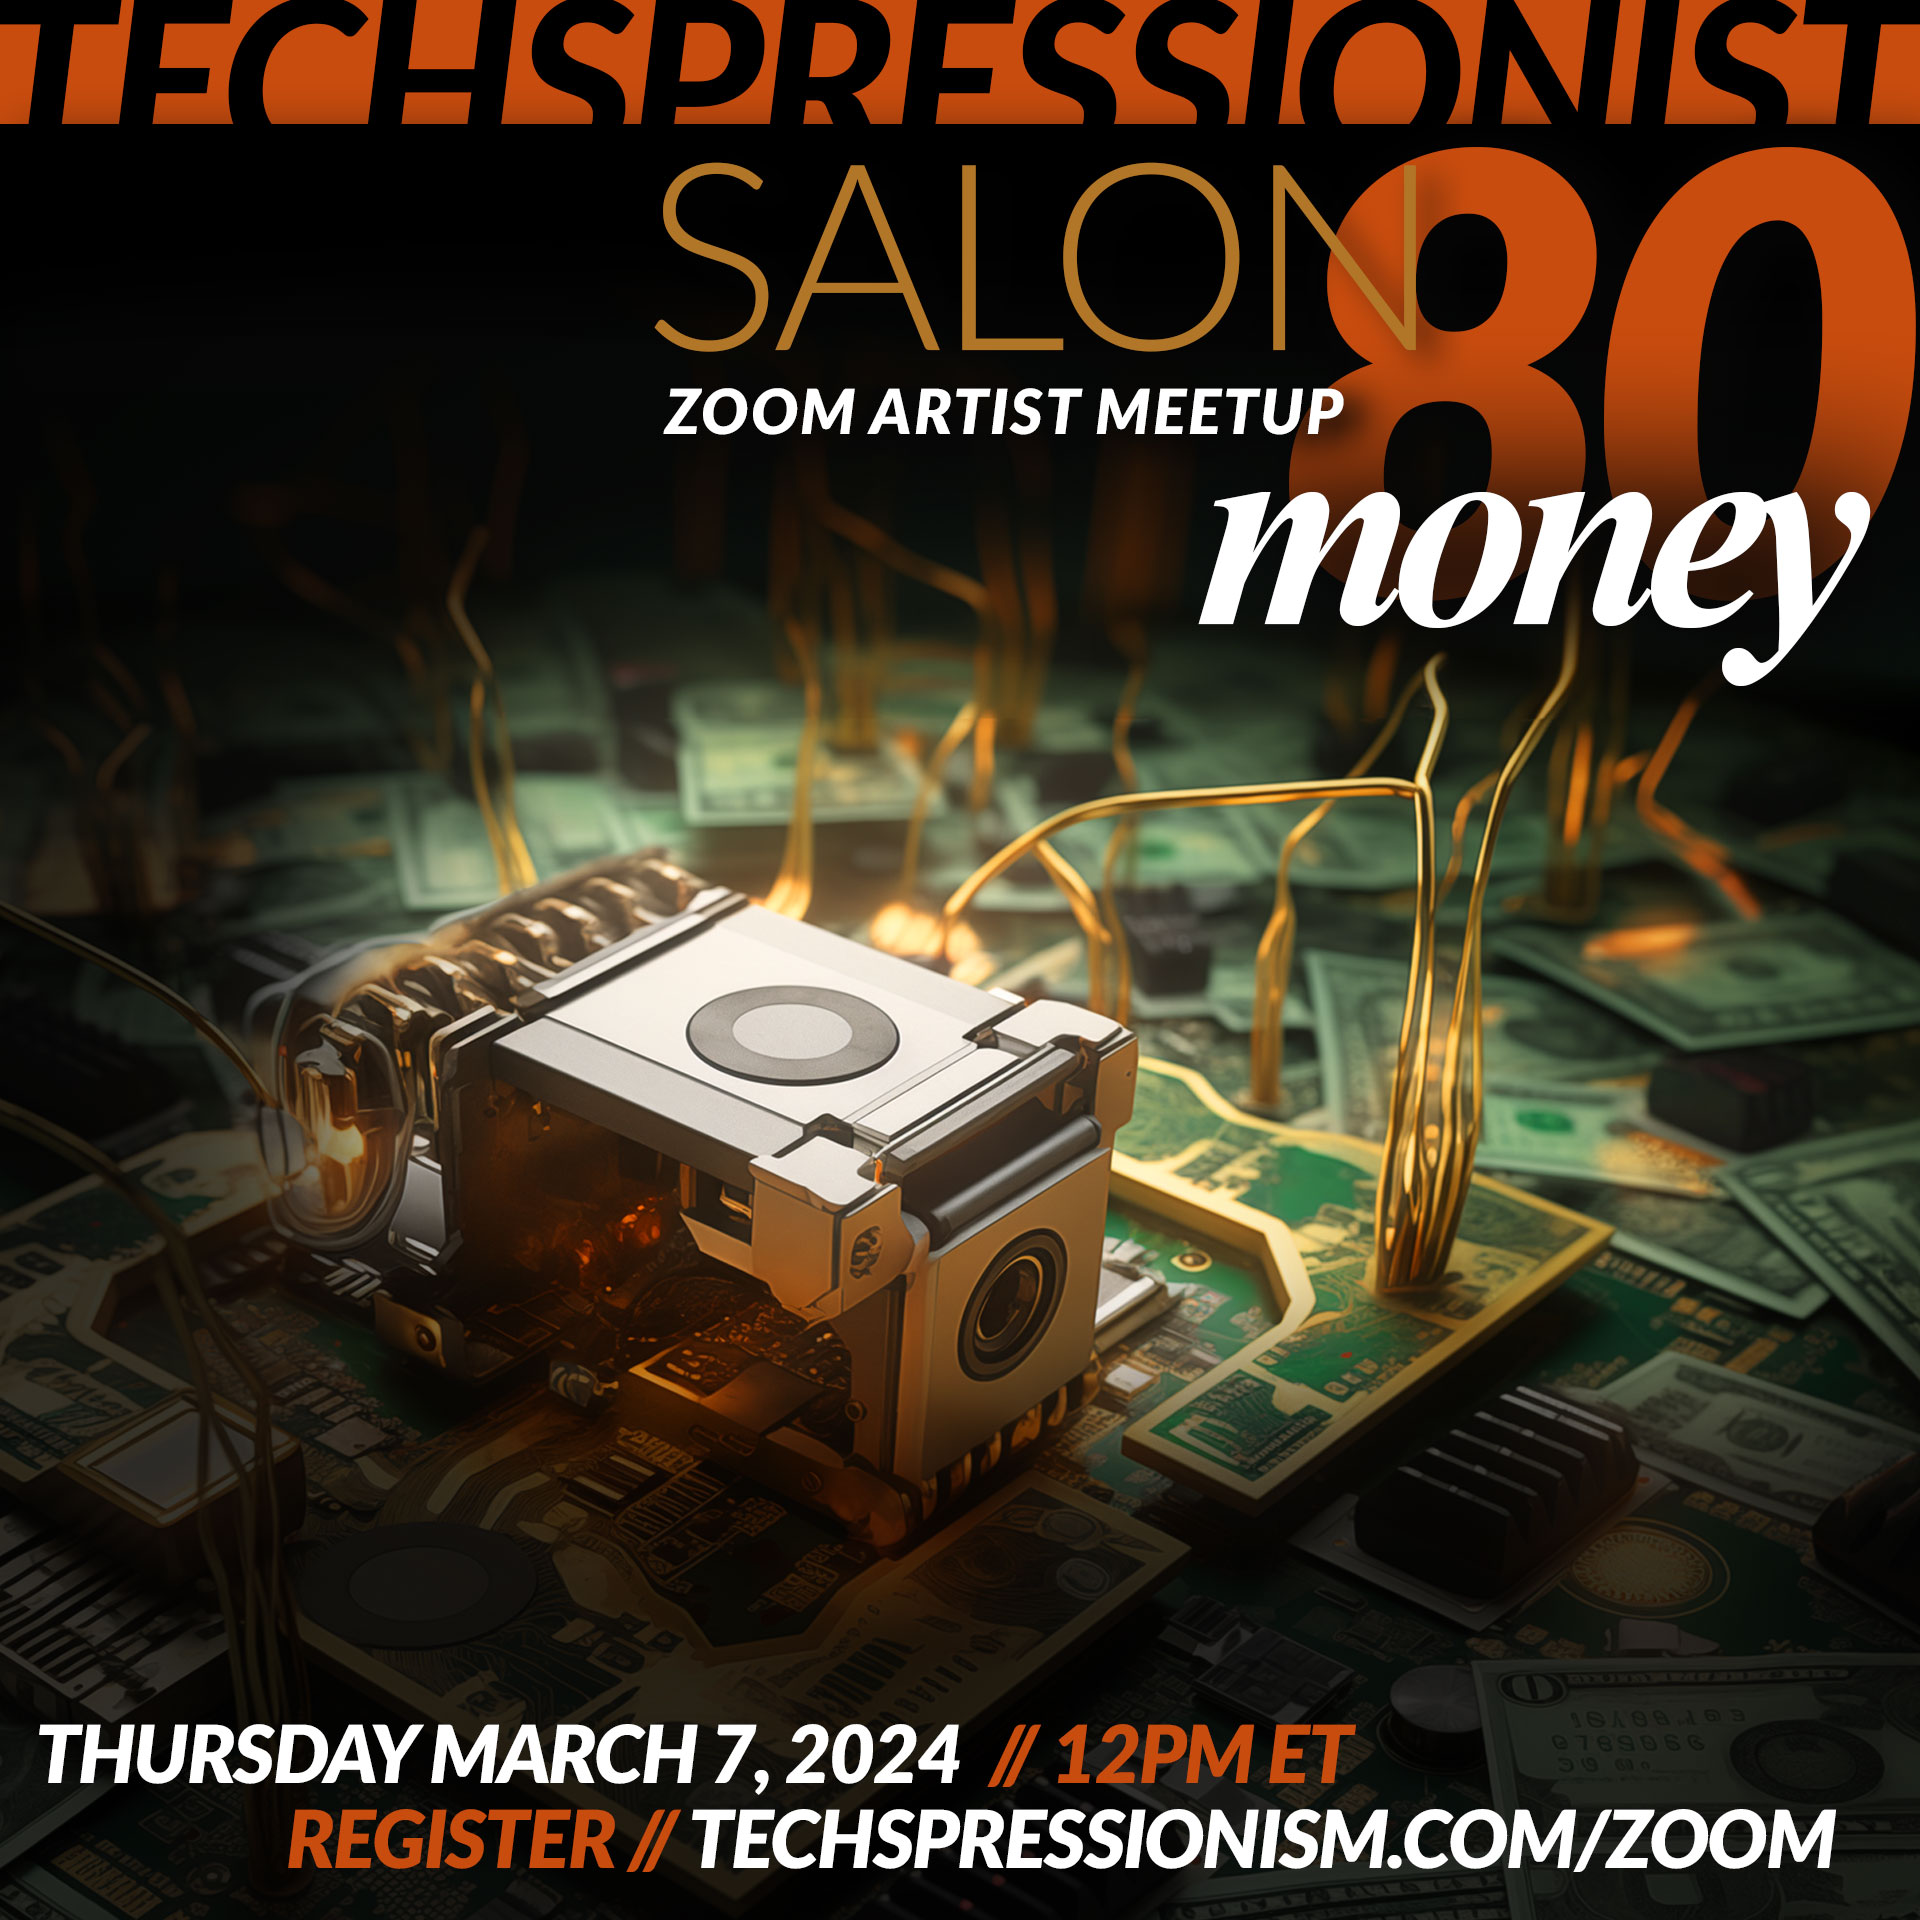 Techspressionist Salon 80 - Money